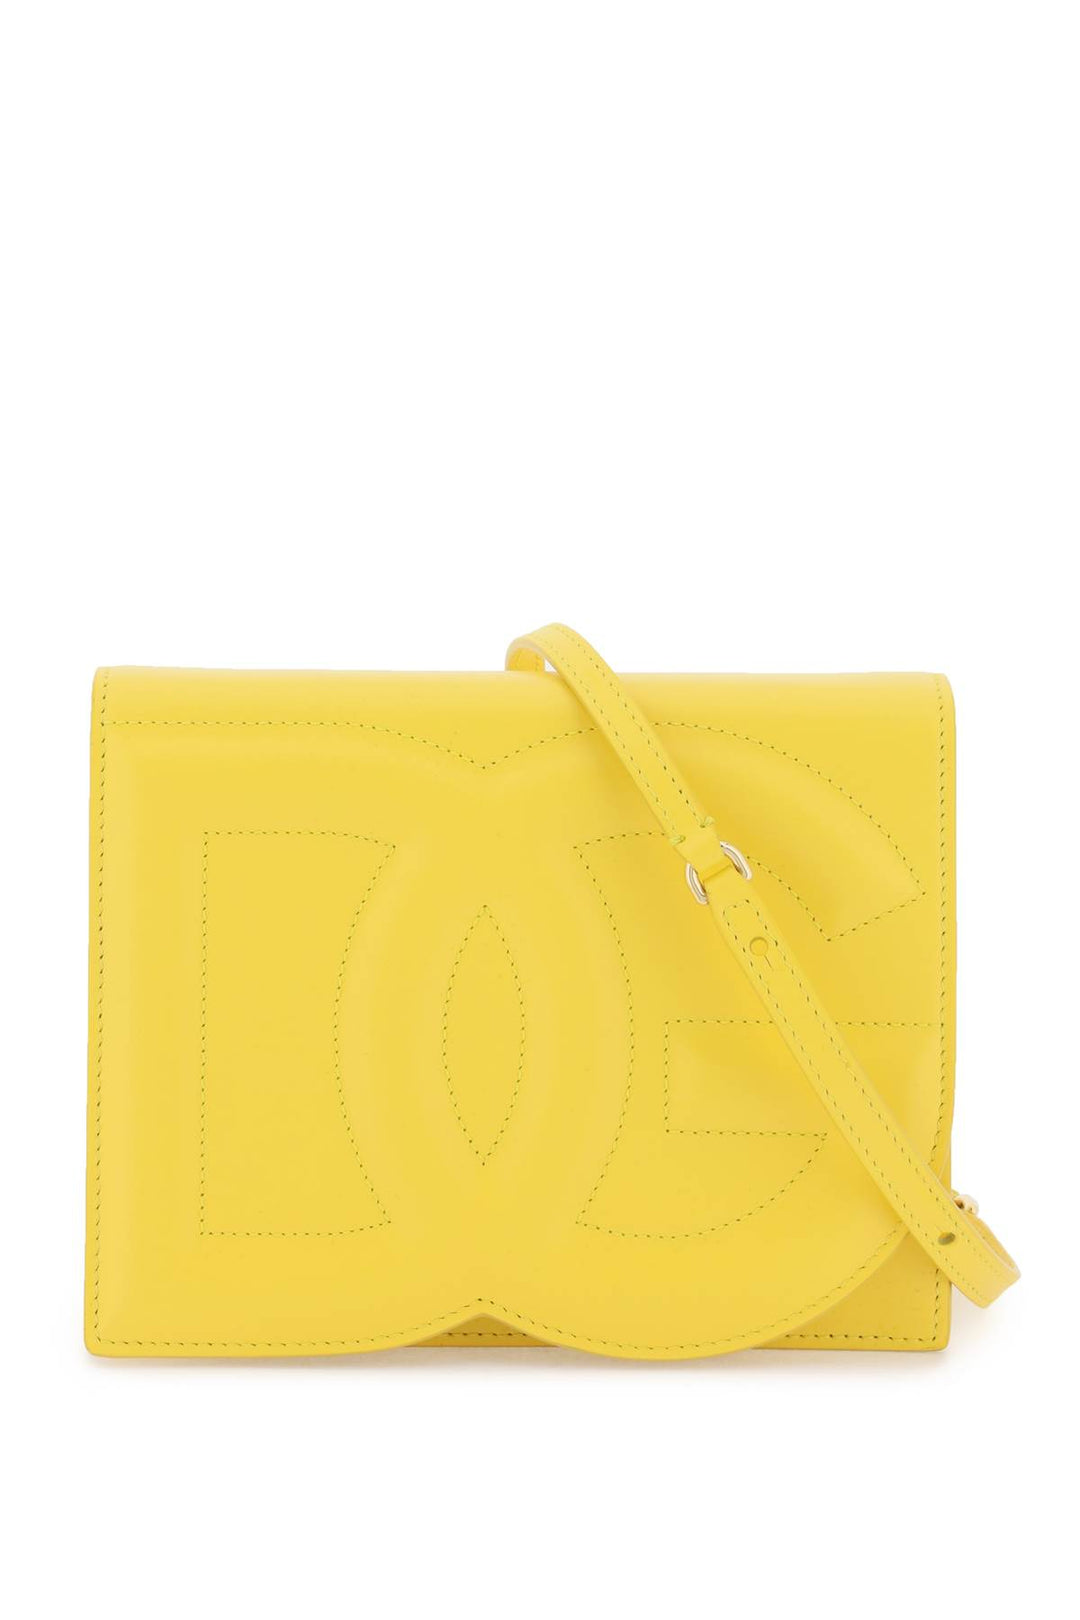 Borsa A Tracolla Dg Logo - Dolce & Gabbana - Donna